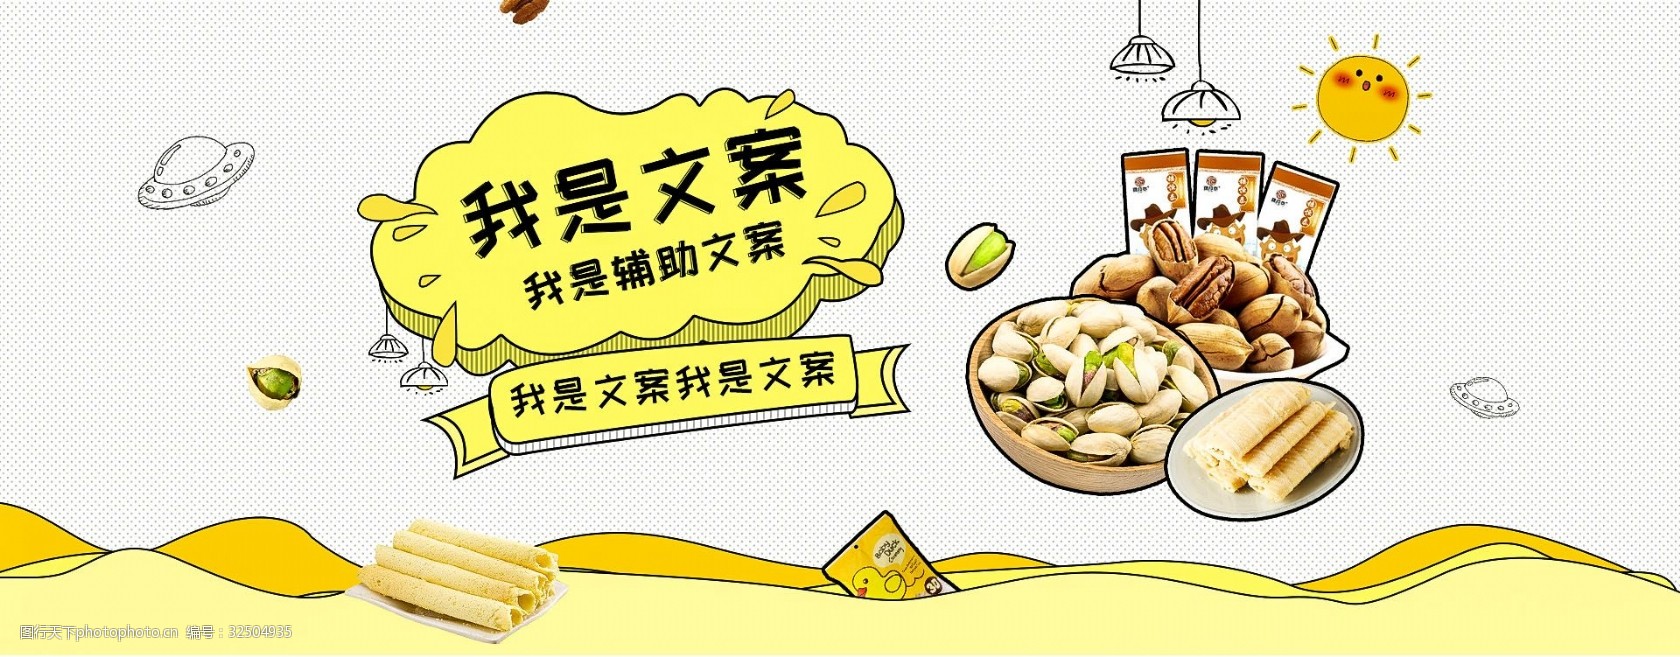 食品零食banner海报图合集